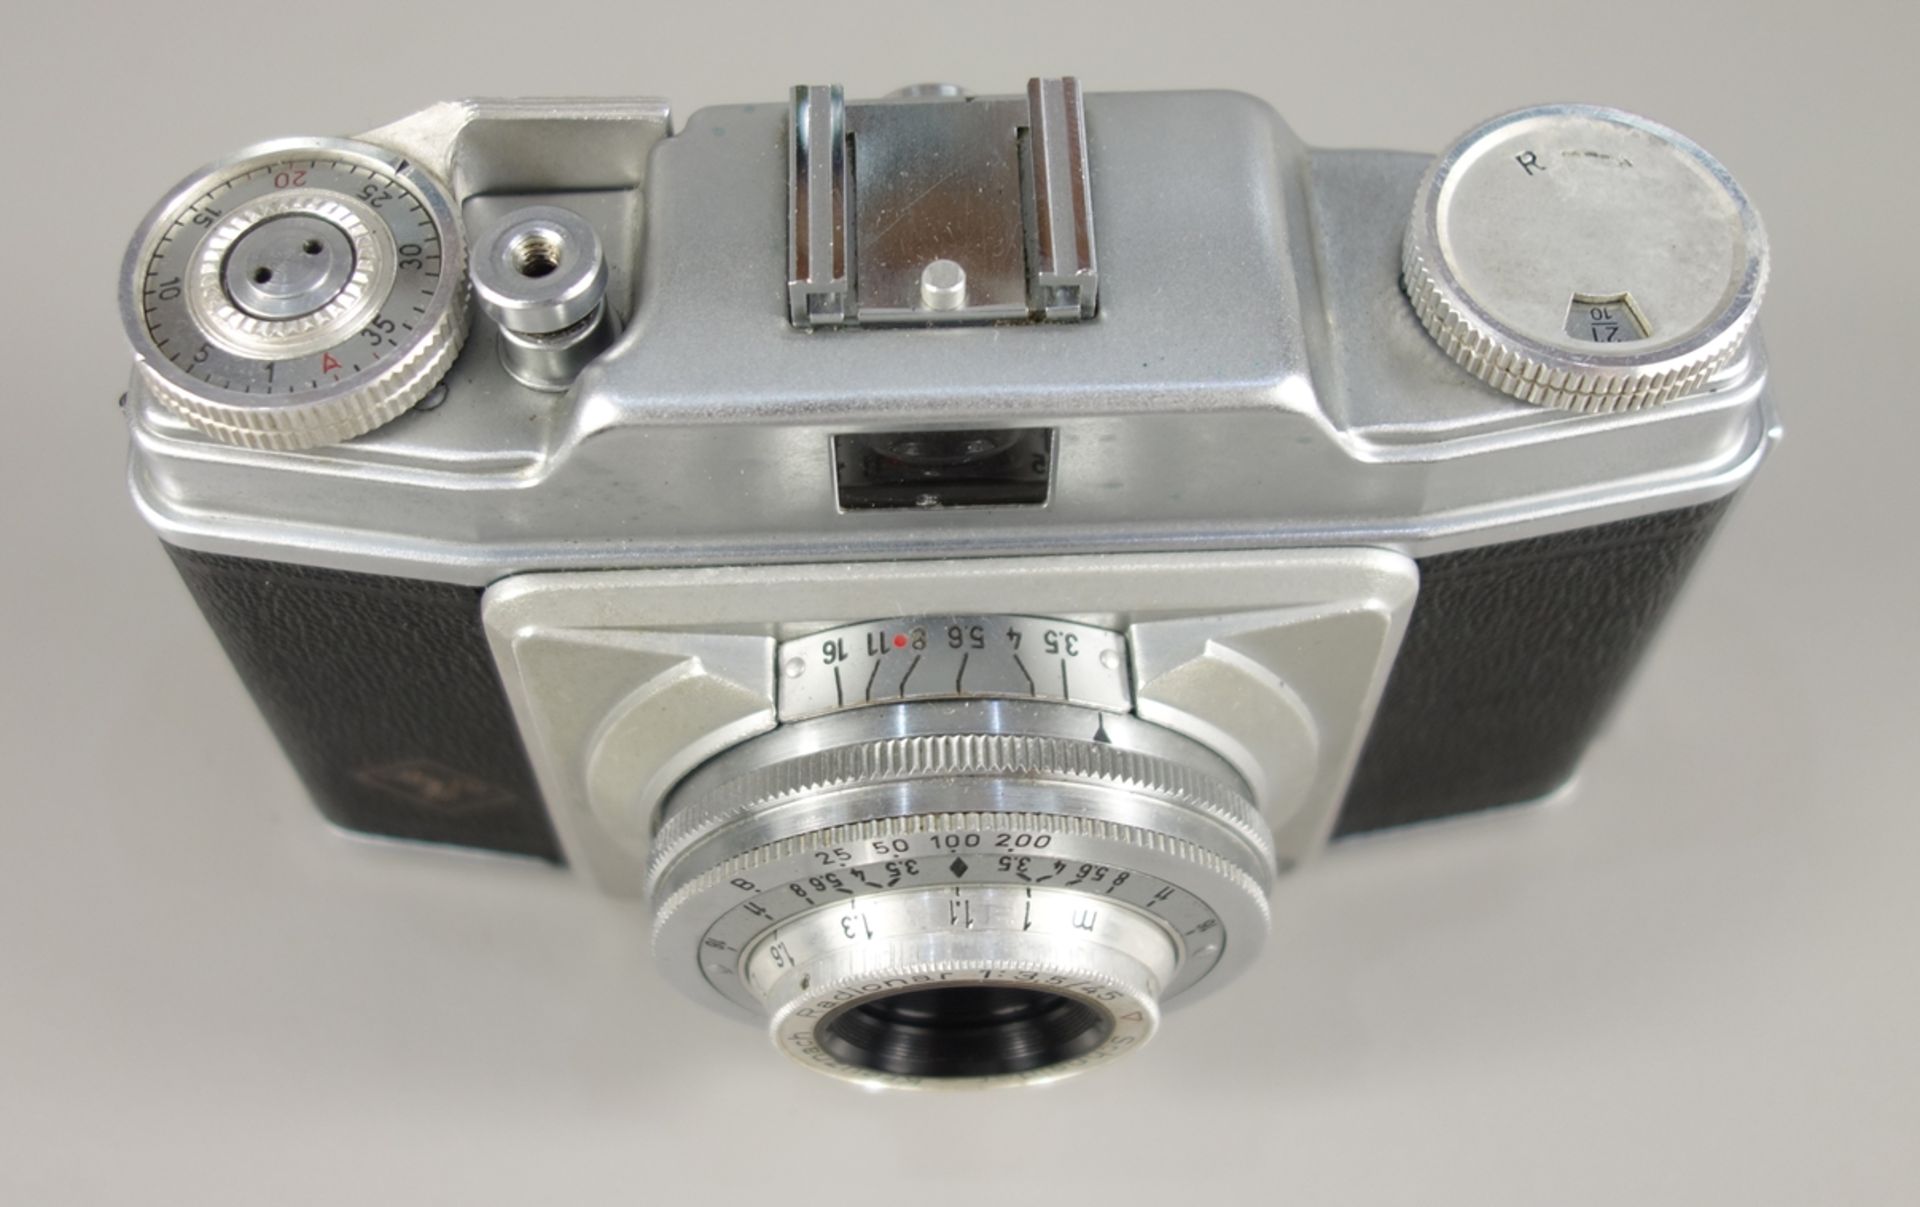 Agfa "Silette Pronto", 1950er Jahre, Kleinbild-Sucherkamera, feststehendes Objektiv Schneider- - Bild 2 aus 3